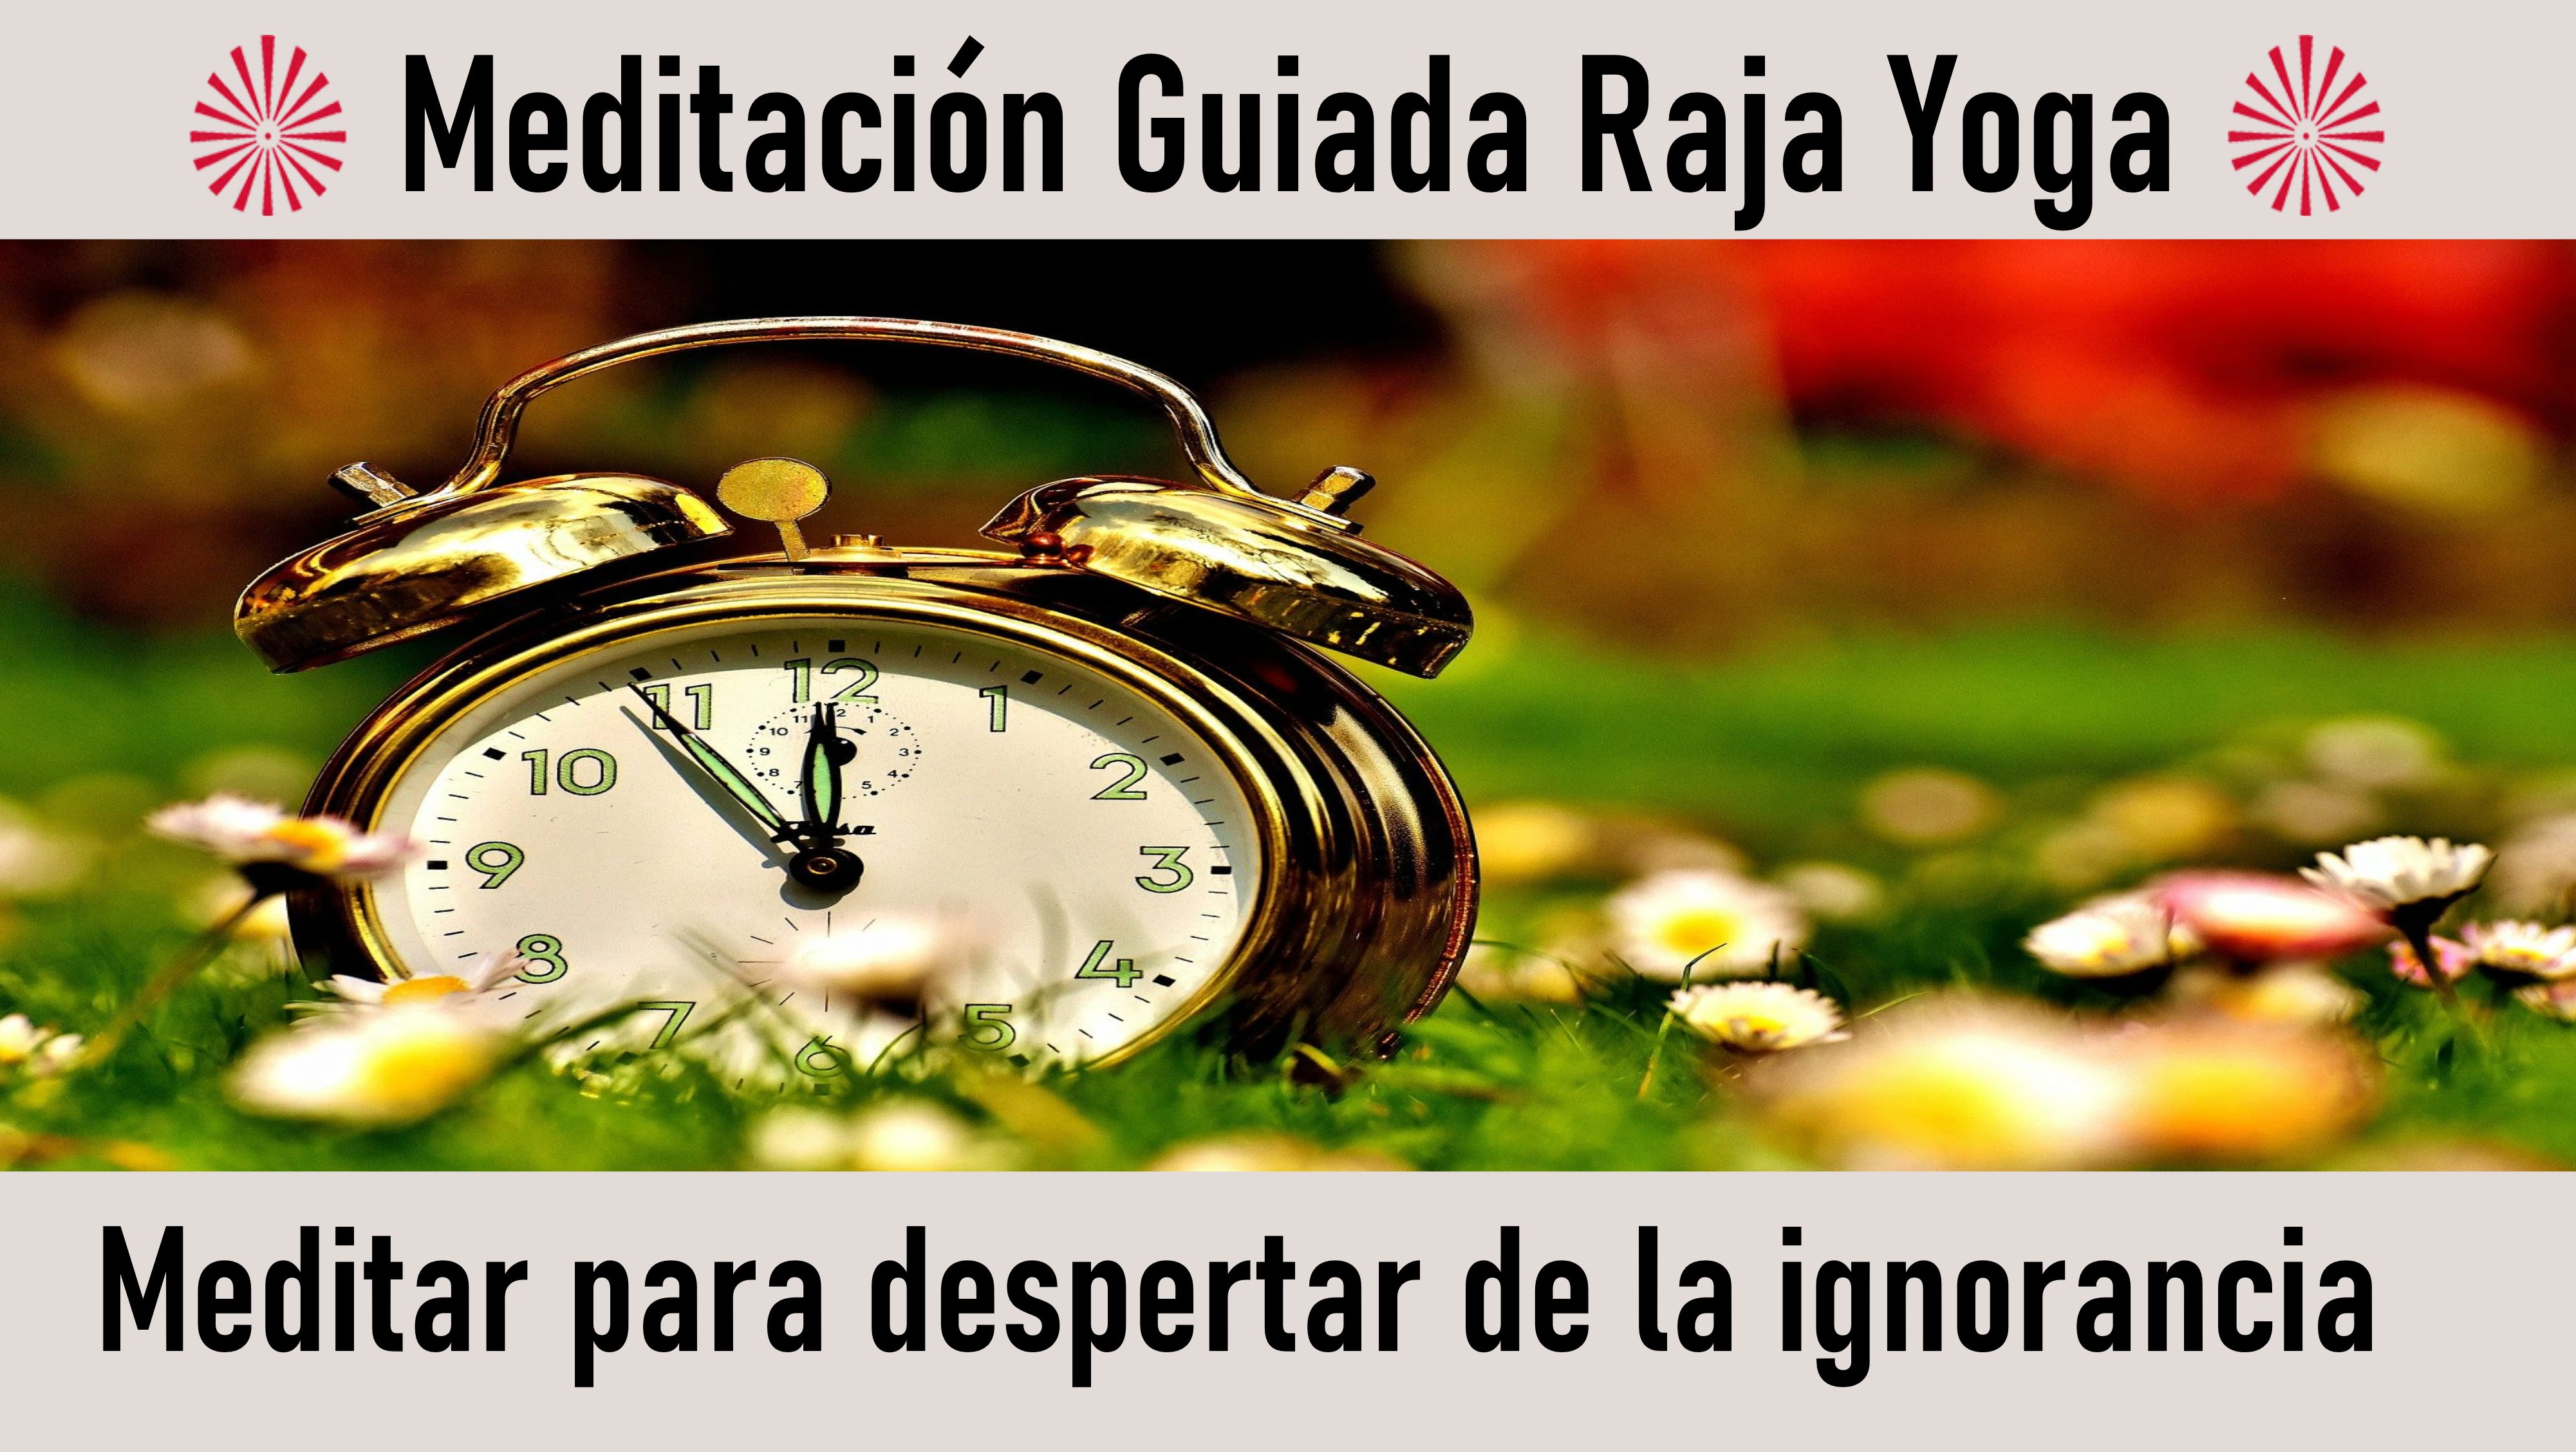 Meditación Raja Yoga: Meditar para despertar de la ignorancia (12 Agosto 2020) On-line desde Sevilla